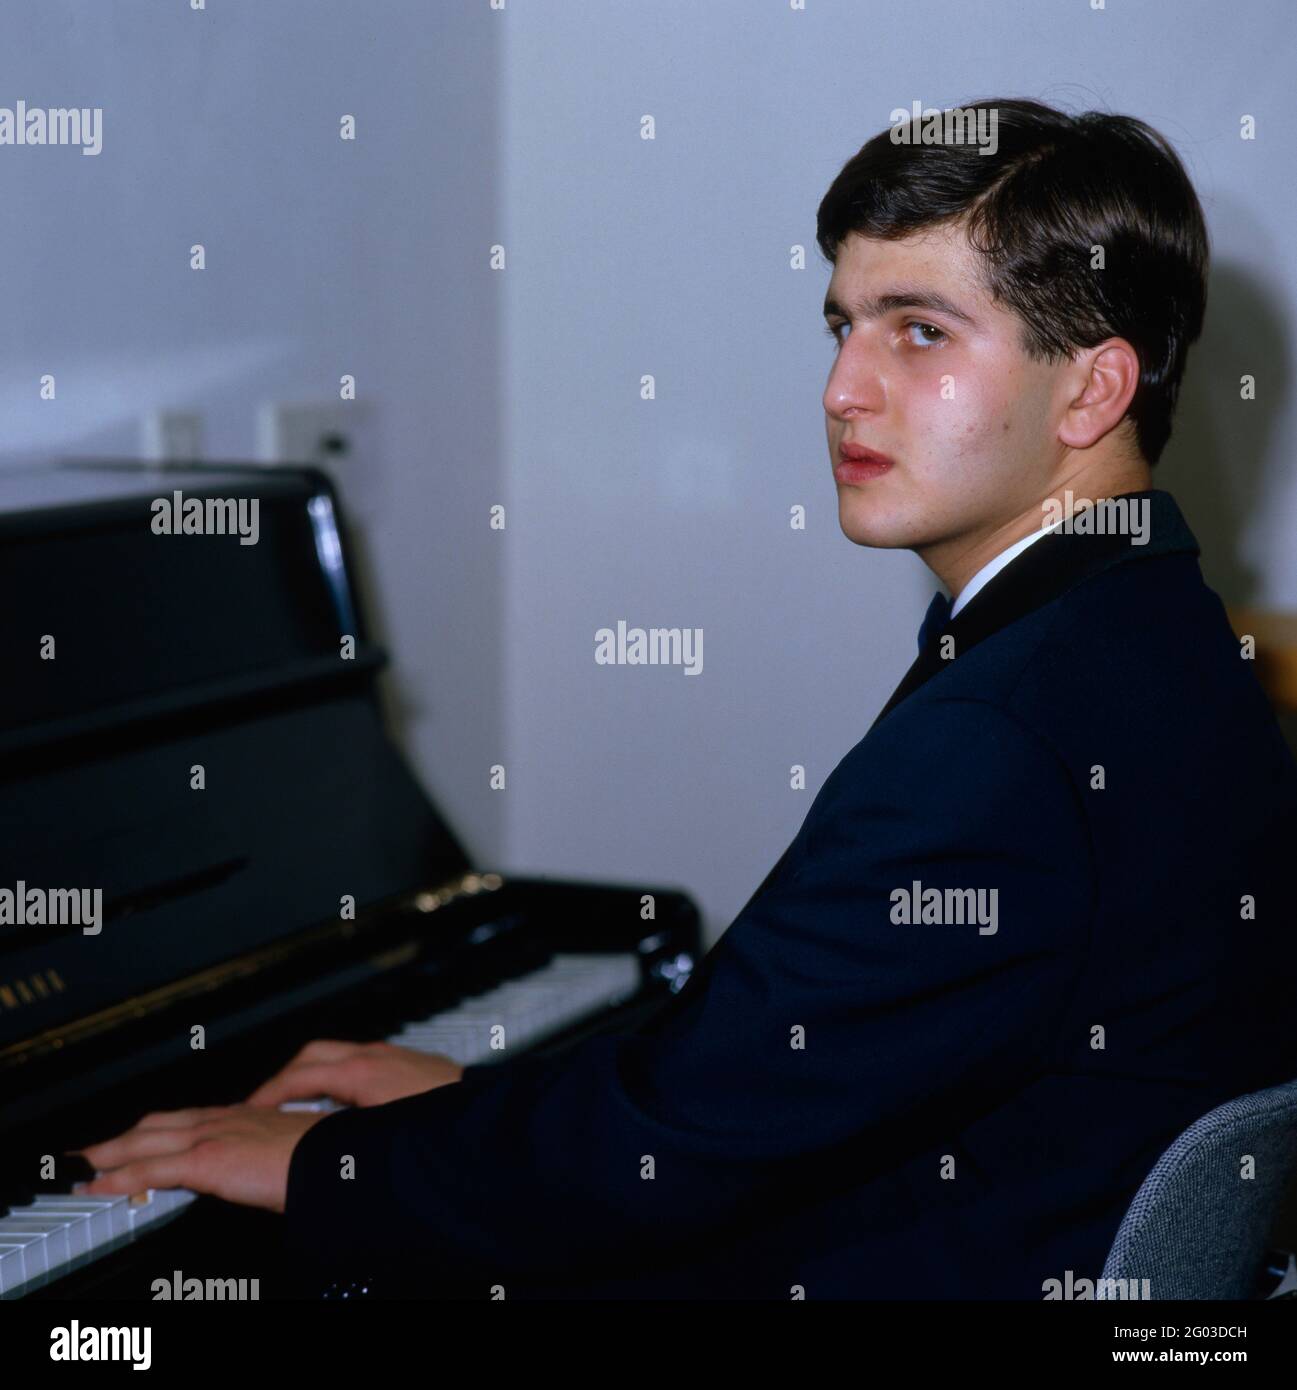 Dimitris Sgouros, griechischer Pianist, am Klavier, 1986. Dimitris Sgouros, Greek pianist, on the piano, 1986. Stock Photo